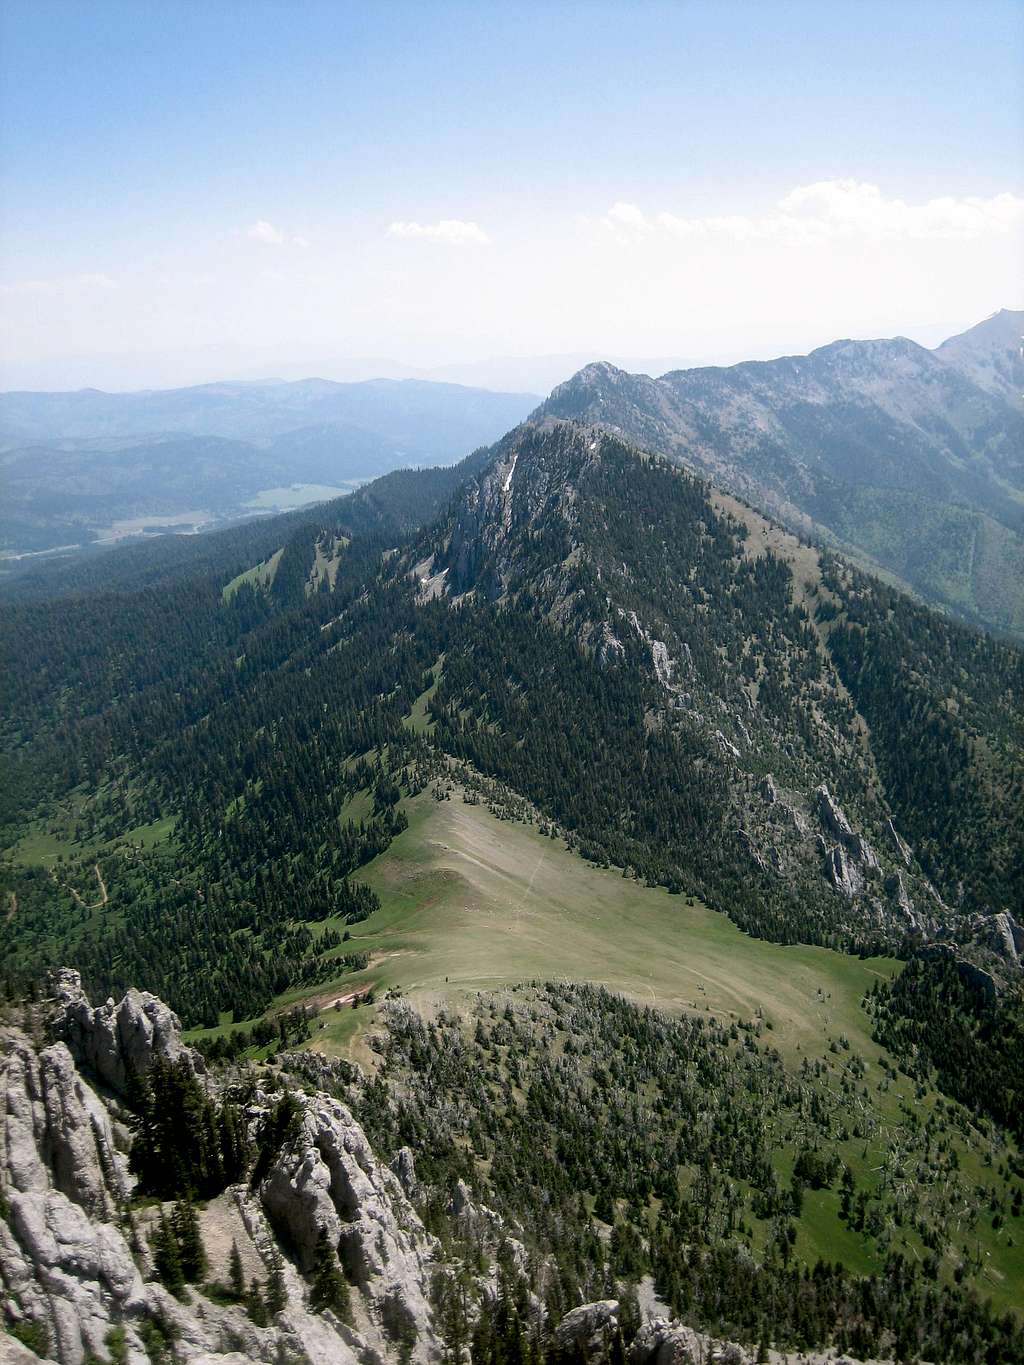 Ross Pass as seen from Ross Peak